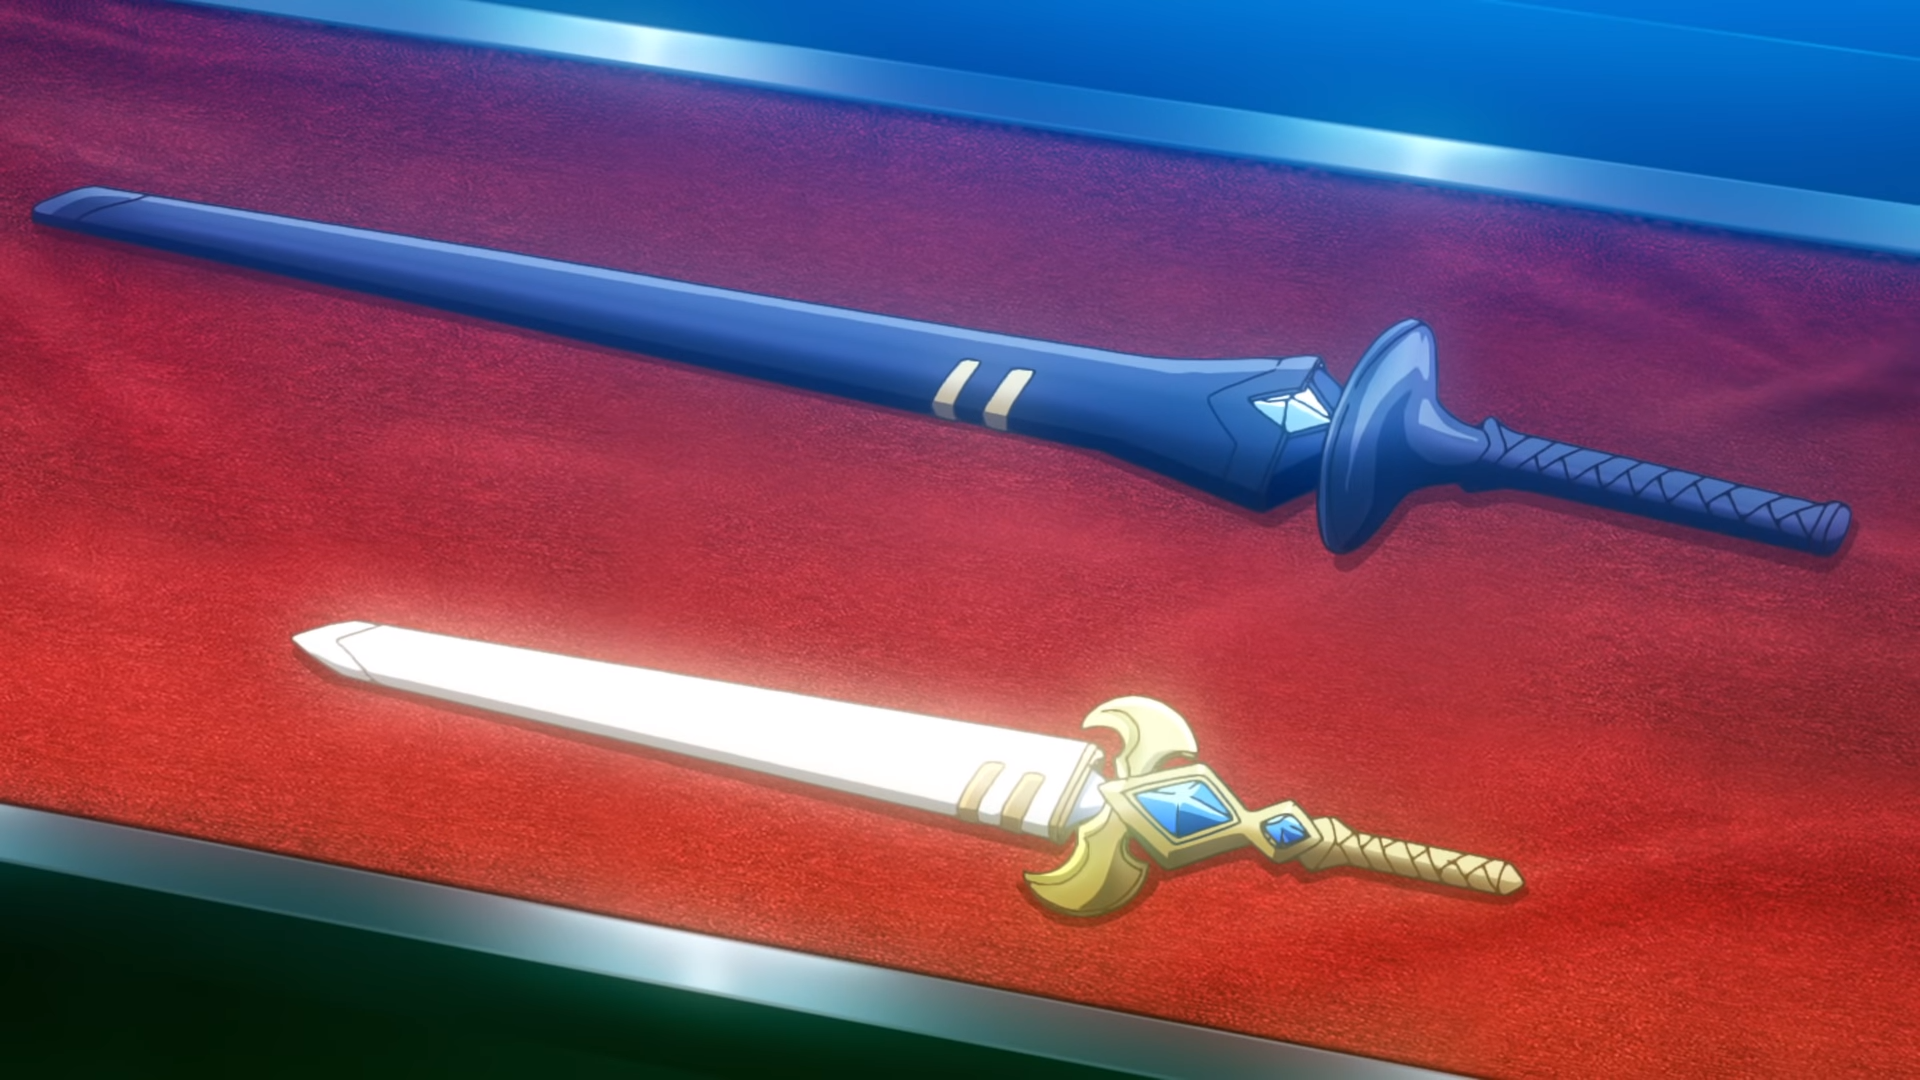 Top 10 Strongest Swords In Anime